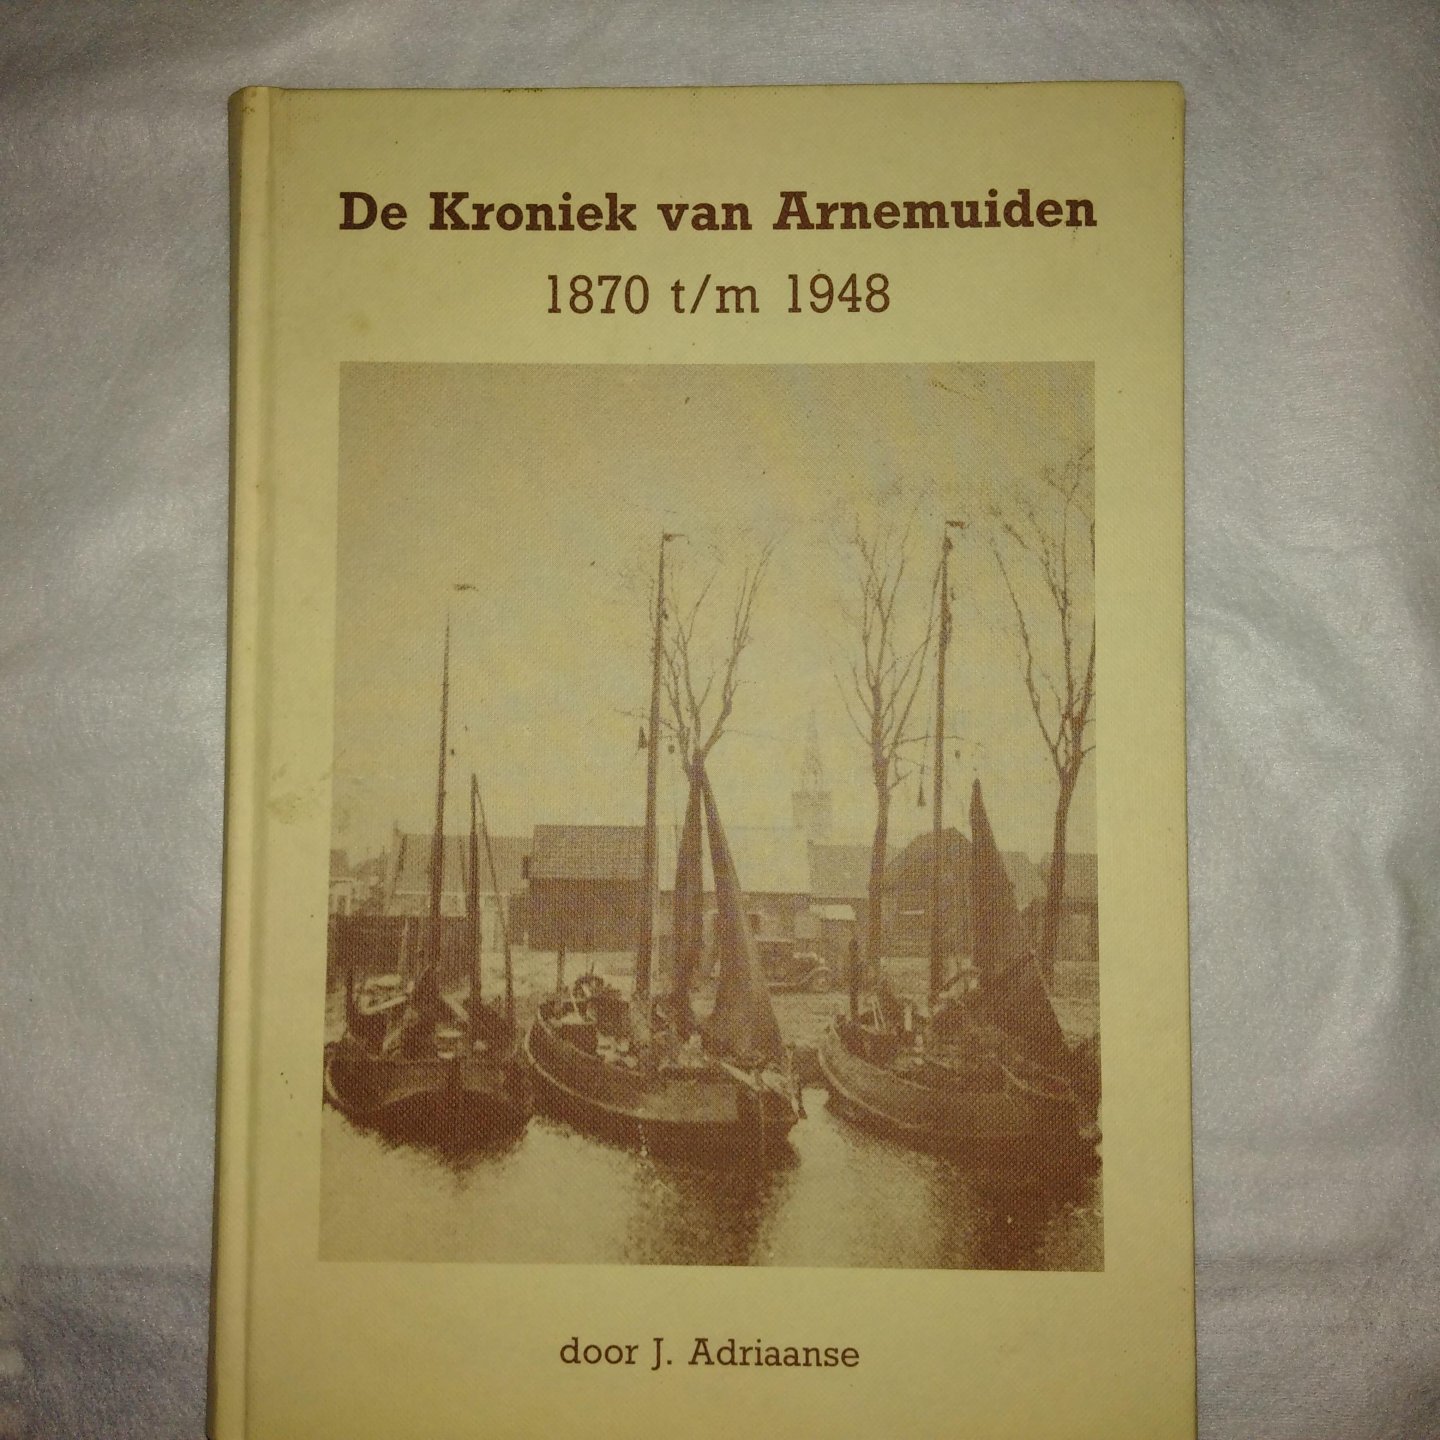 Adriaanse, J. - De Kroniek van Arnemuiden 1879 t/m 1948